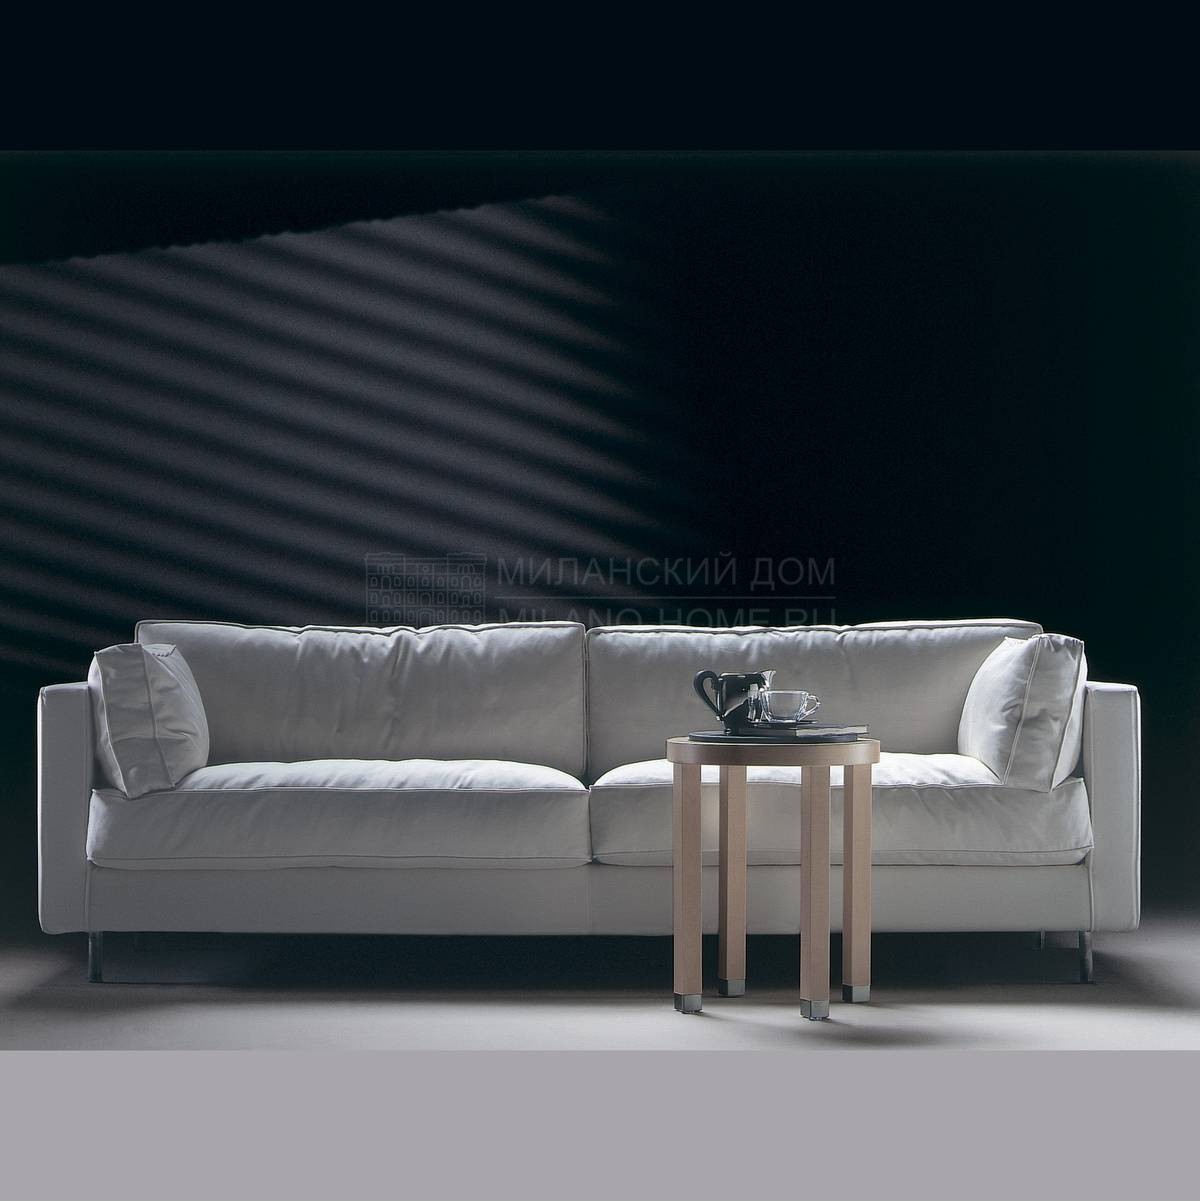 Прямой диван Pasodoble /sofa из Италии фабрики FLEXFORM